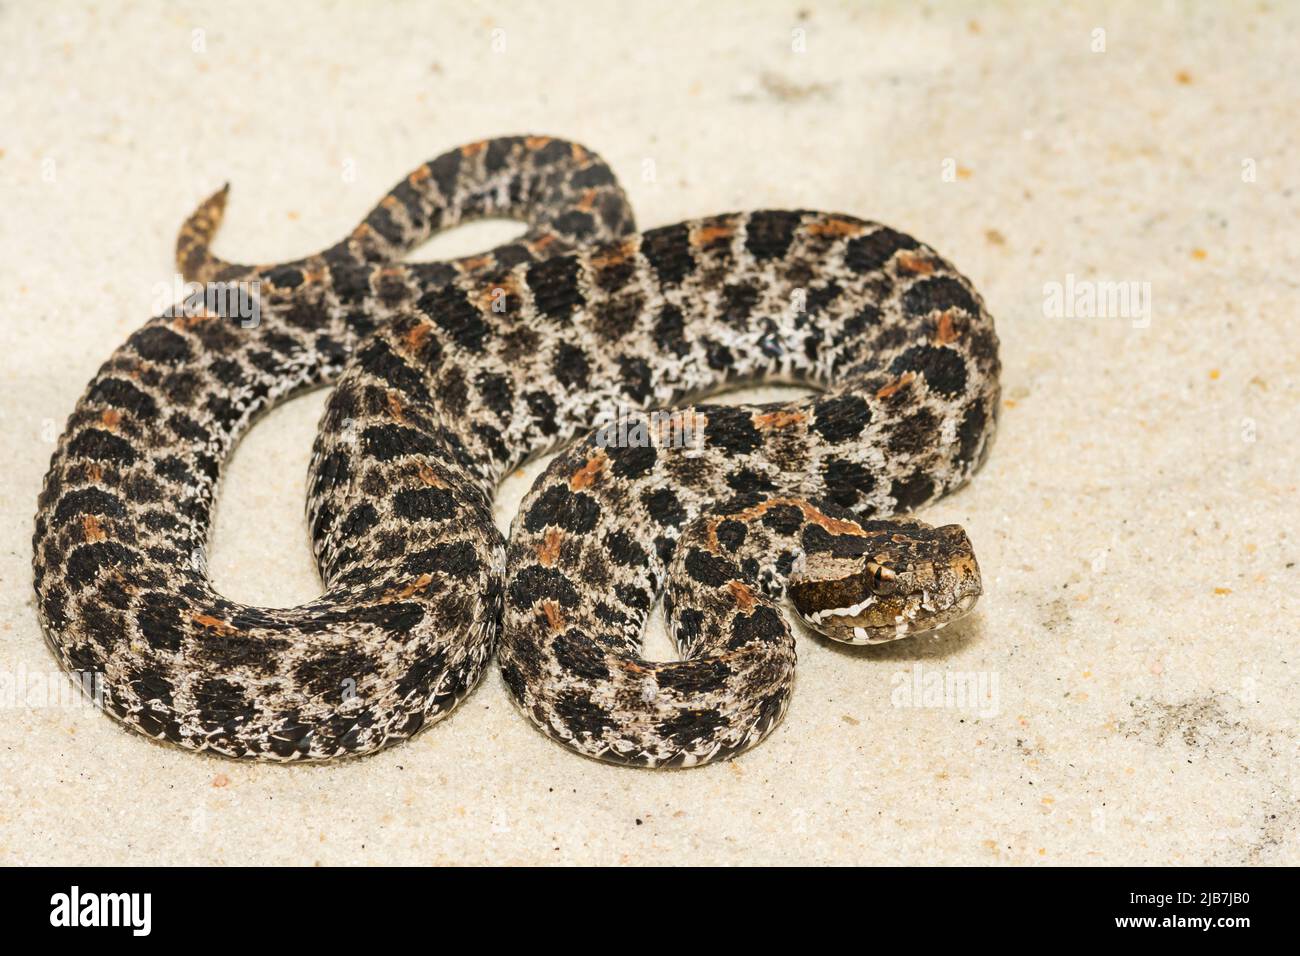 Serpiente de cascabel de pigmeo oscuro - Sistrurus miliarius barbouri Foto de stock